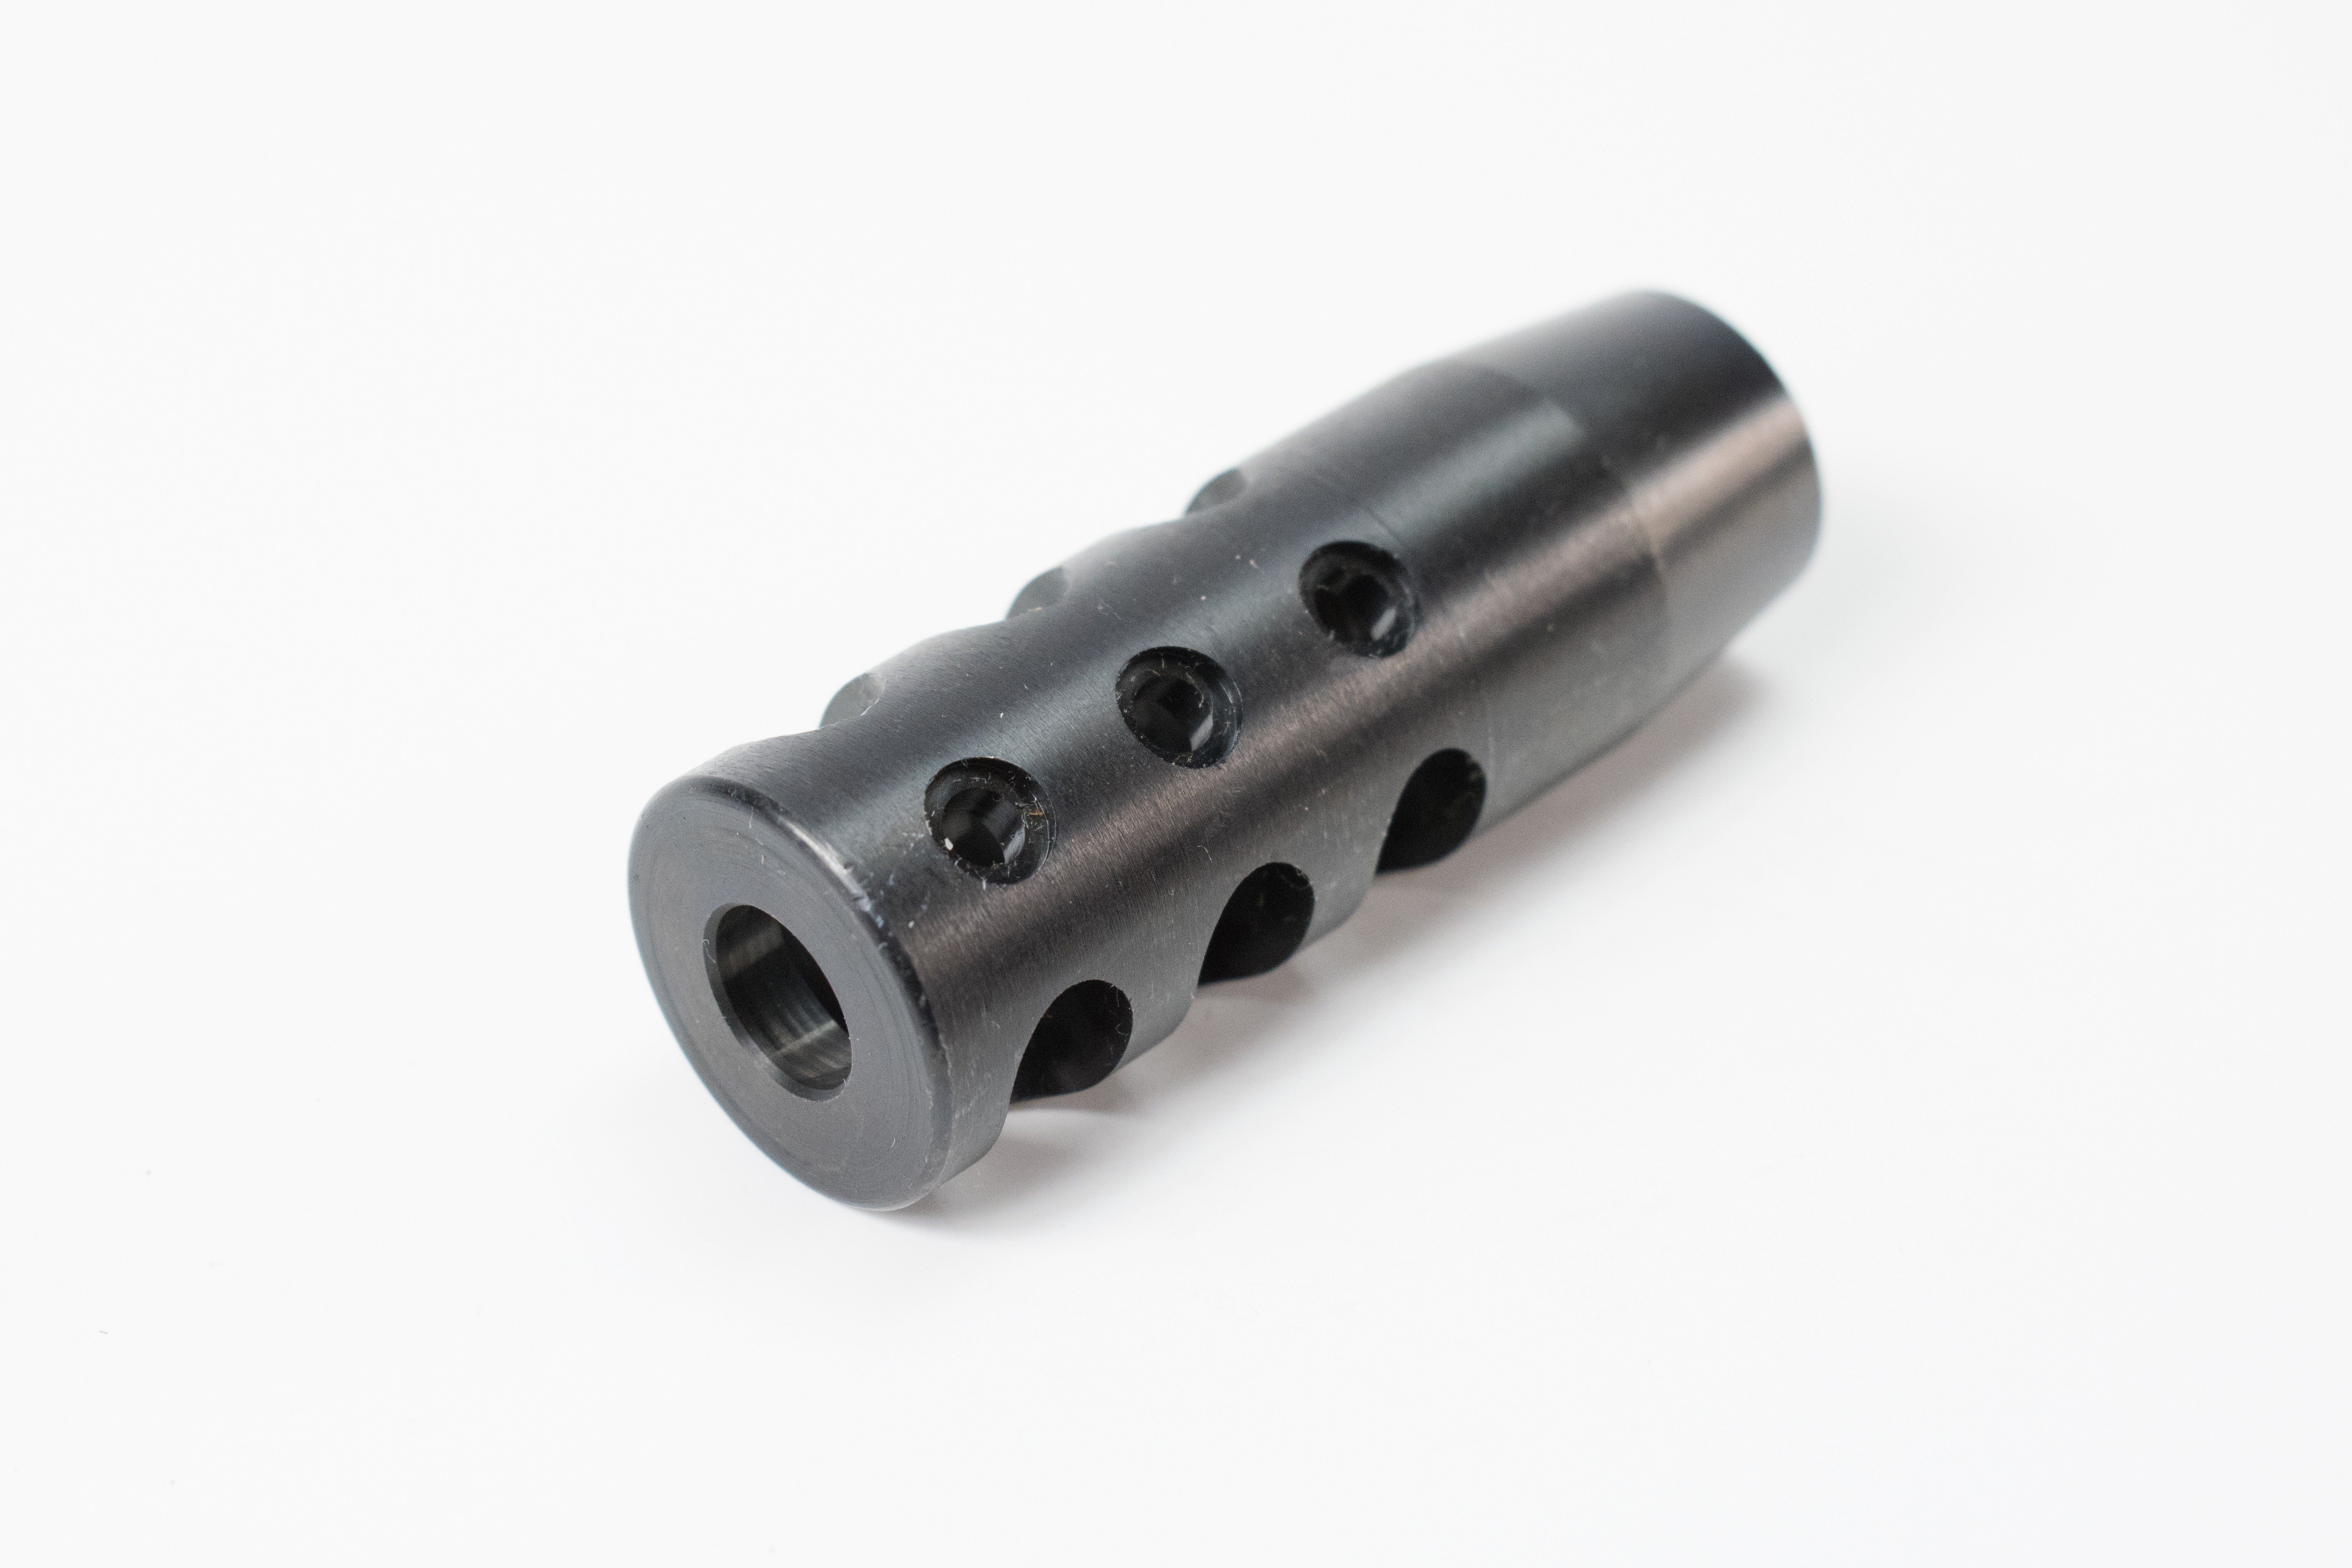 Made in USA DELTAC® "Slingshot" threaded muzzle brake for Mosin Nagant 